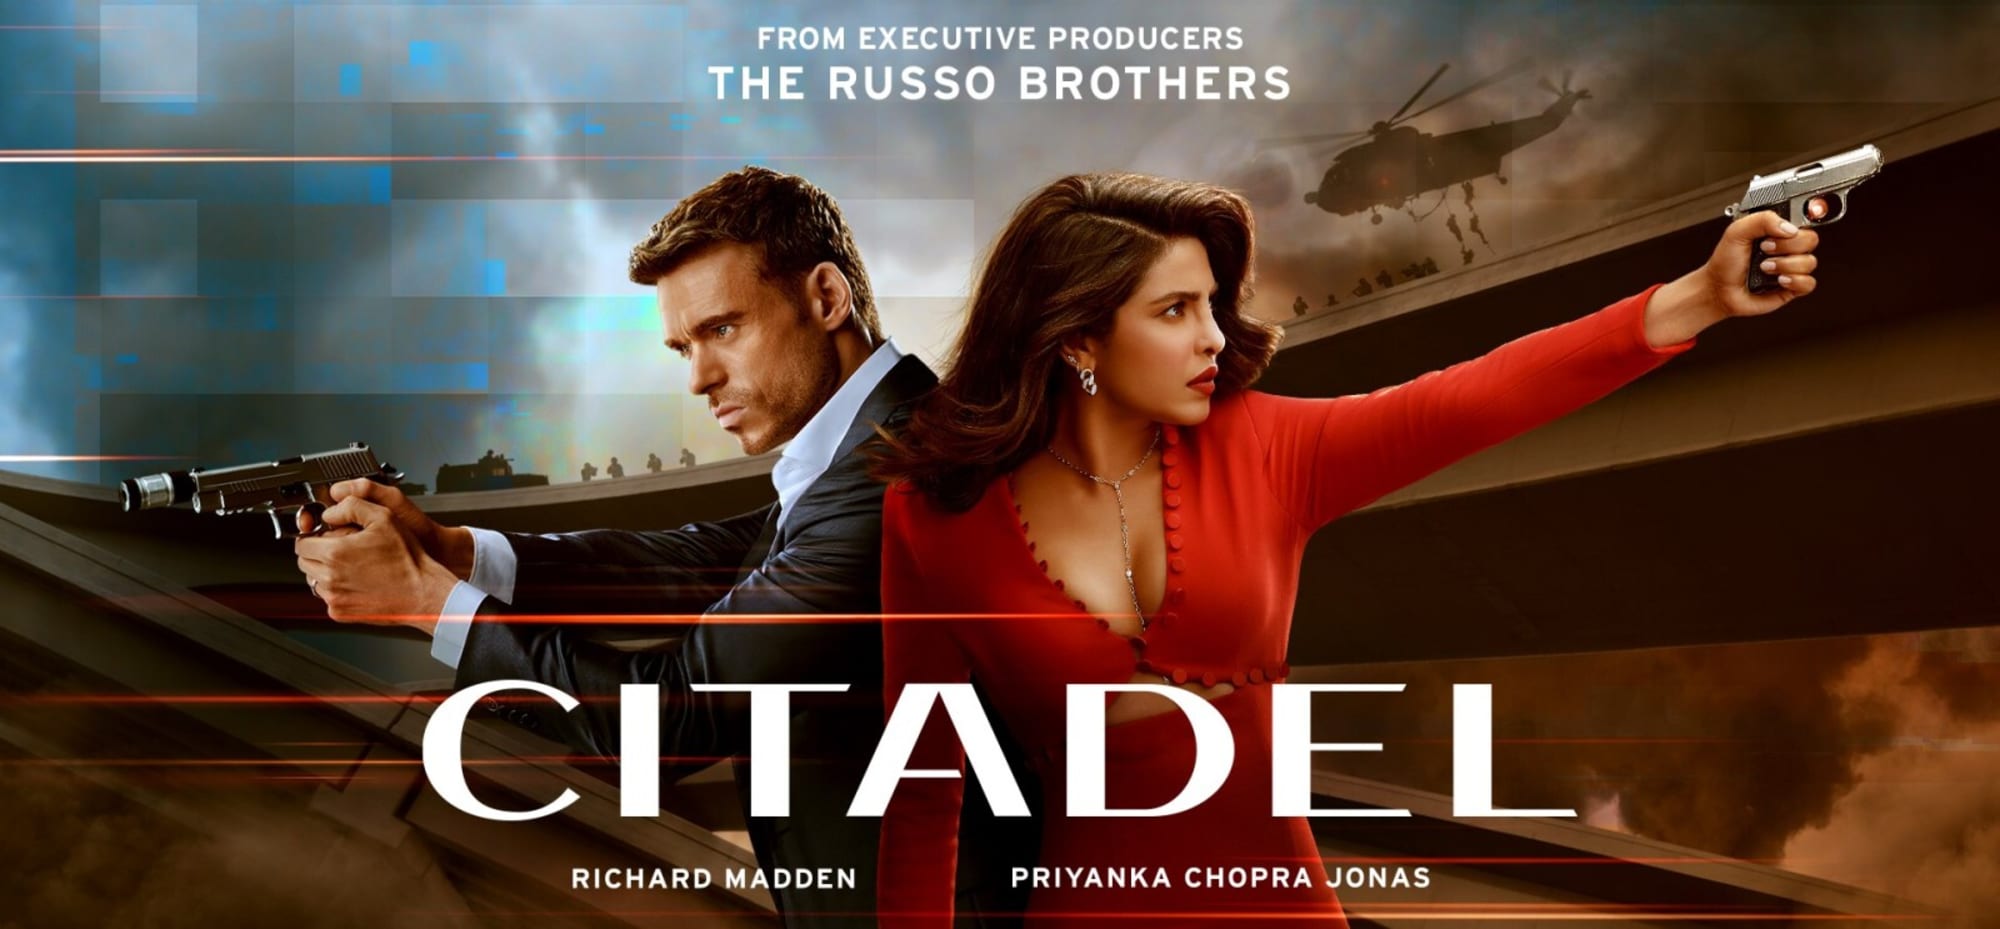 Citadel Amazon Studios Priyanka Chopra Jonas Richard Madden